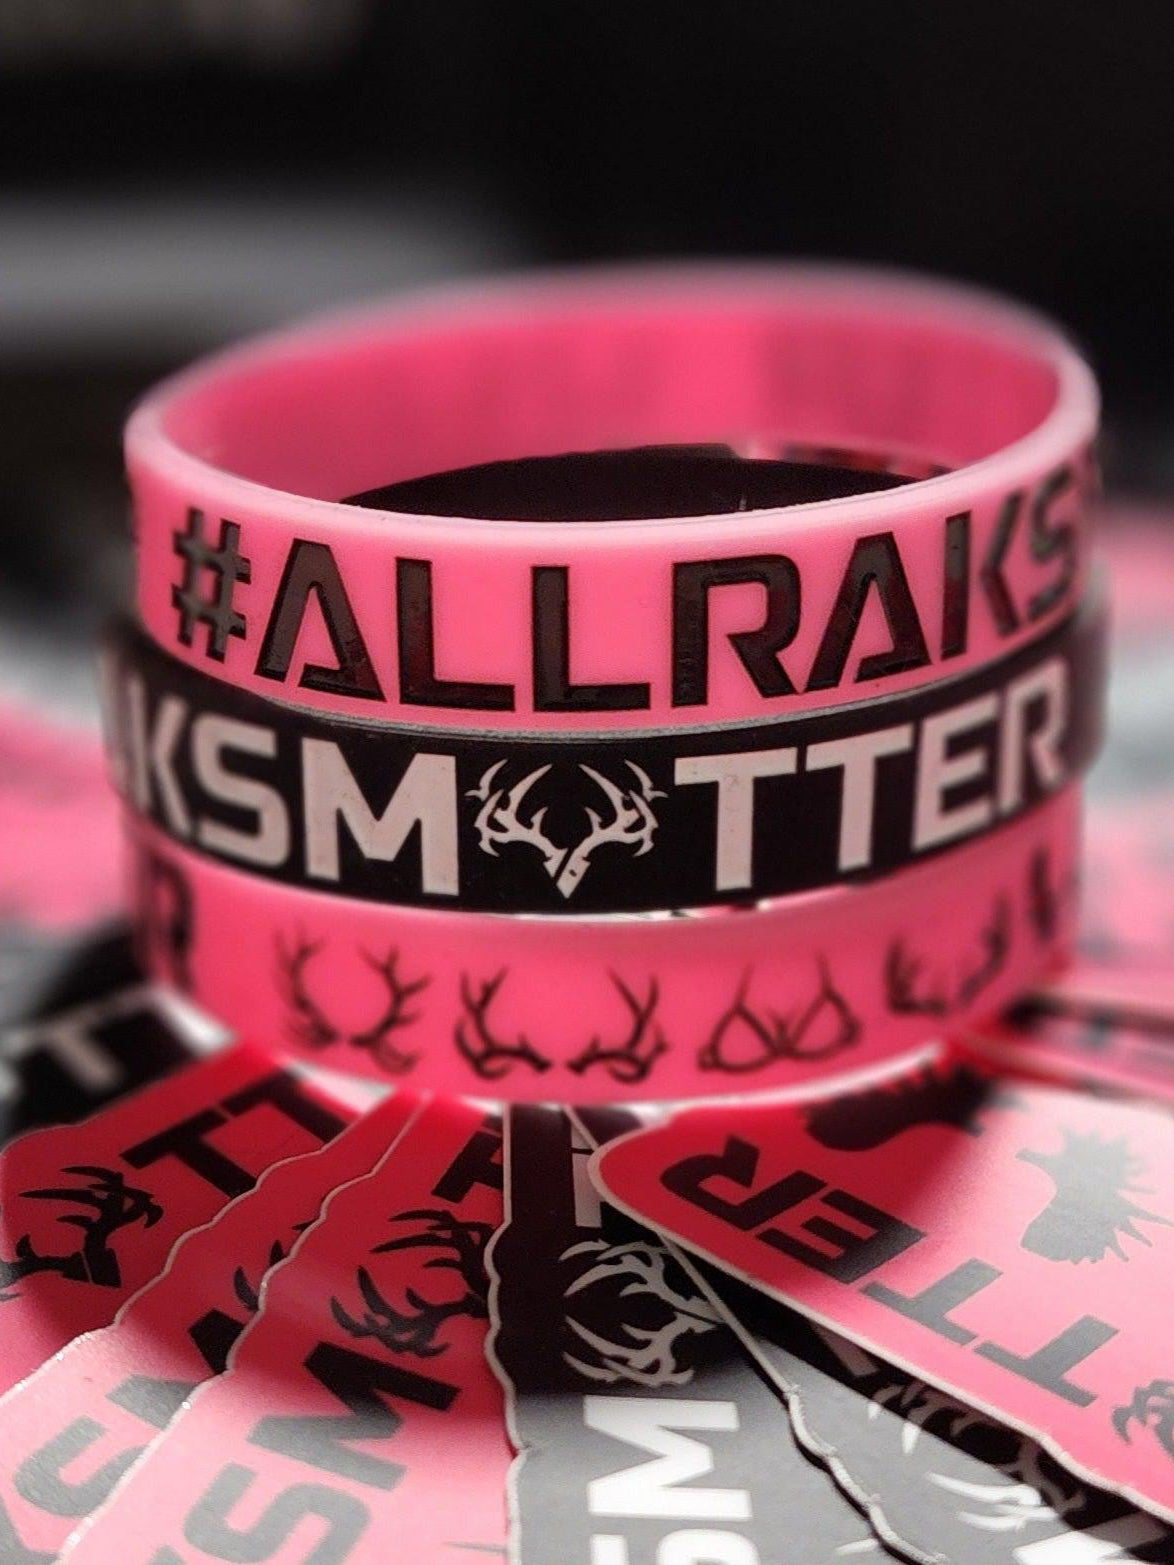 All Raks Matter ™ Silicone Bracelet